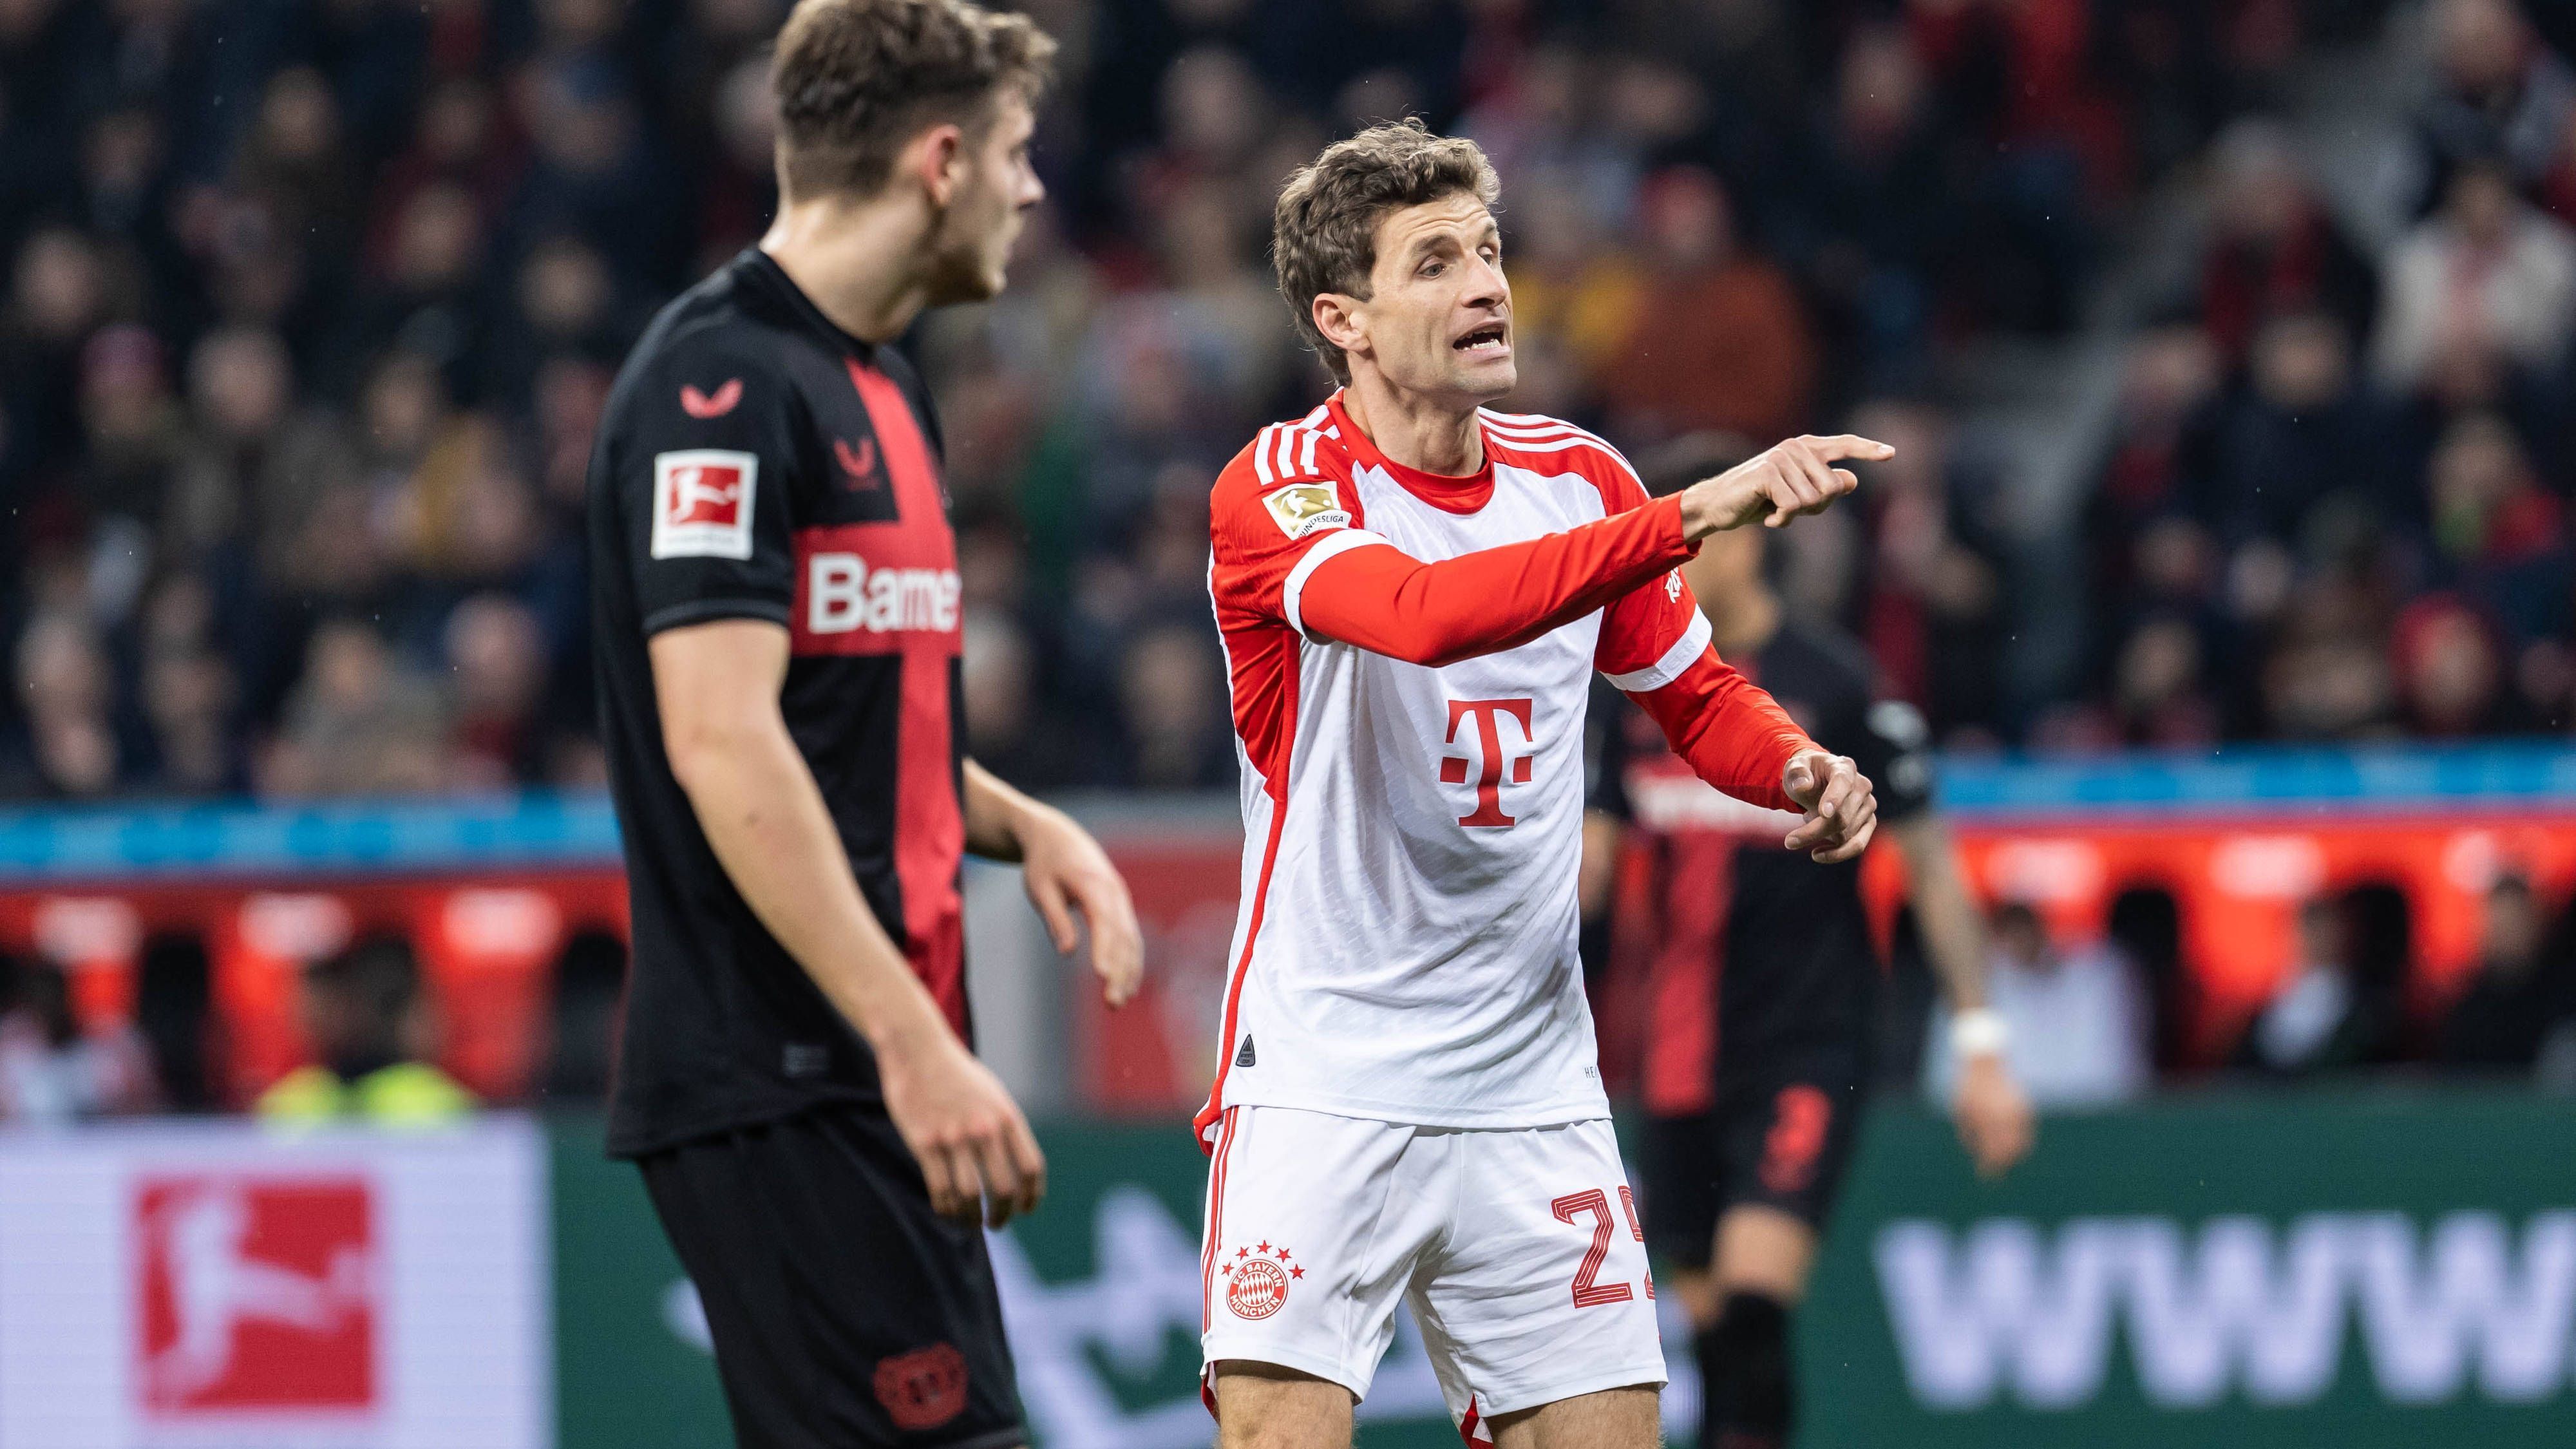 <strong>Thomas Müller (FC Bayern)</strong><br>Auch der Routiner wird nach einer Stunde ins Spiel geworfen und rückt ins offensive Mittelfeld. Kann dort aber auch keine Impulse mehr für das enttäuschende Münchner Angriffsspiel geben. <strong><em>ran</em>-Note: 4</strong>